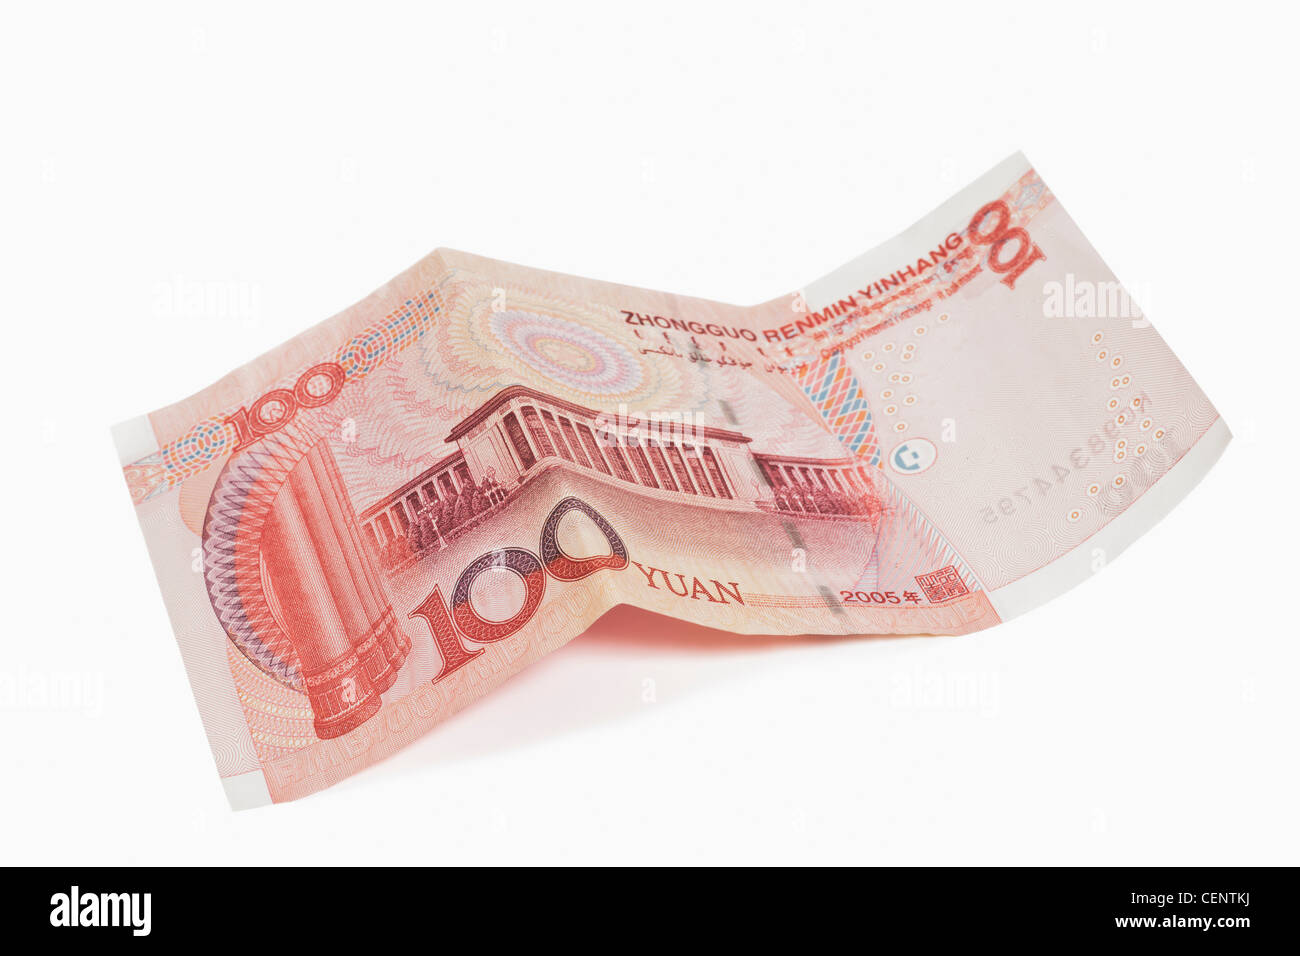 L'arrière de la 100 yuan de loi. Le renminbi, la monnaie chinoise, a été introduit en 1949 après la fondation de la RPC. Banque D'Images